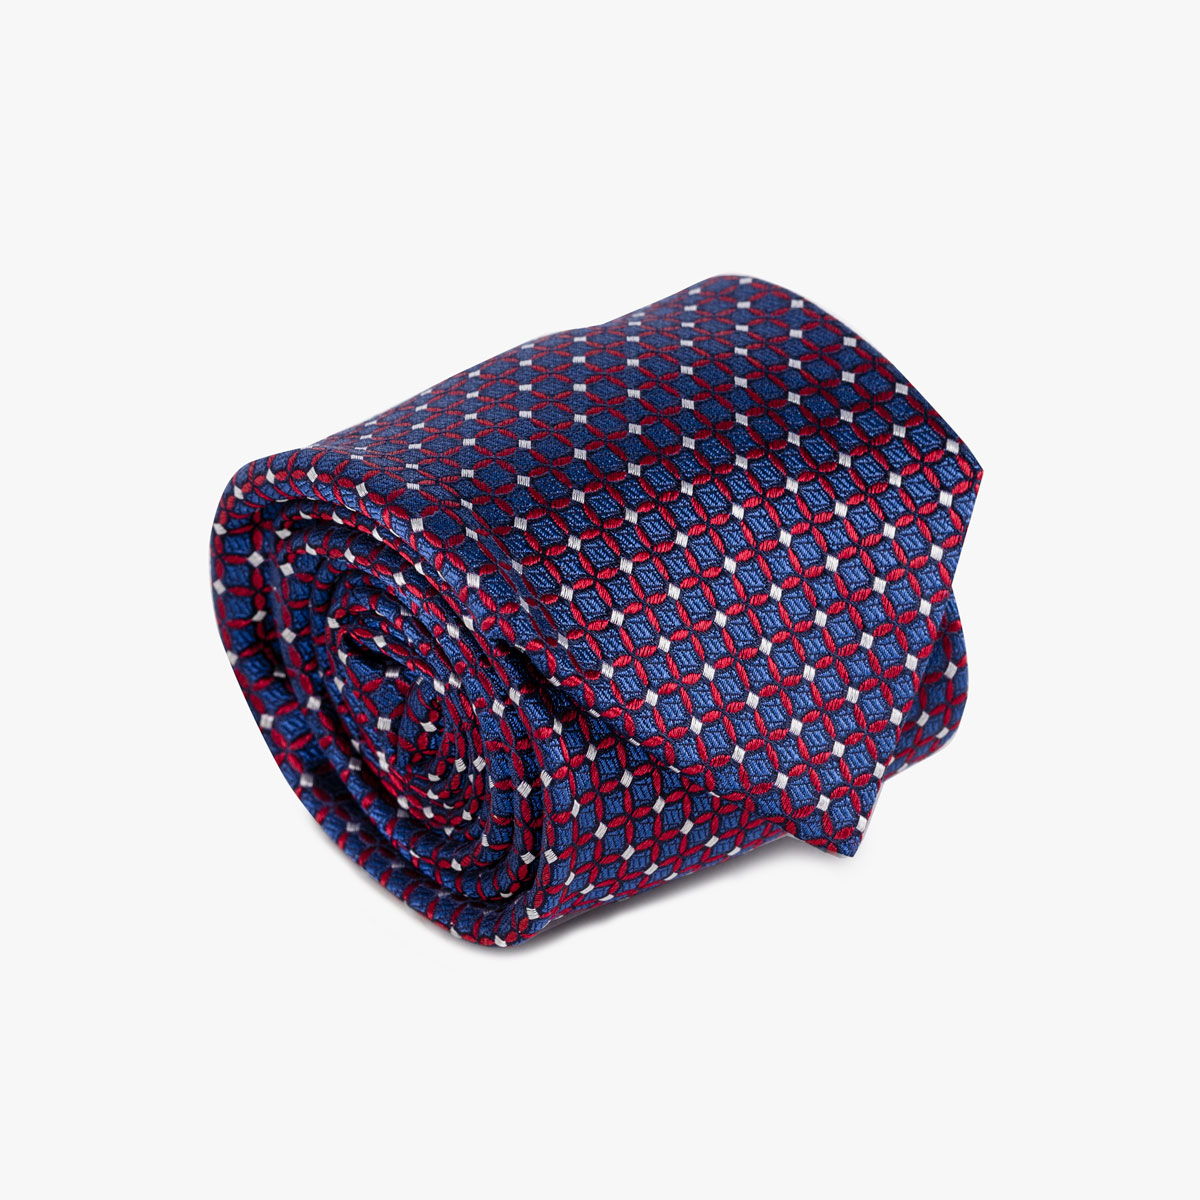 Krawatte mit geometrischem Muster in rot dunkelblau silber